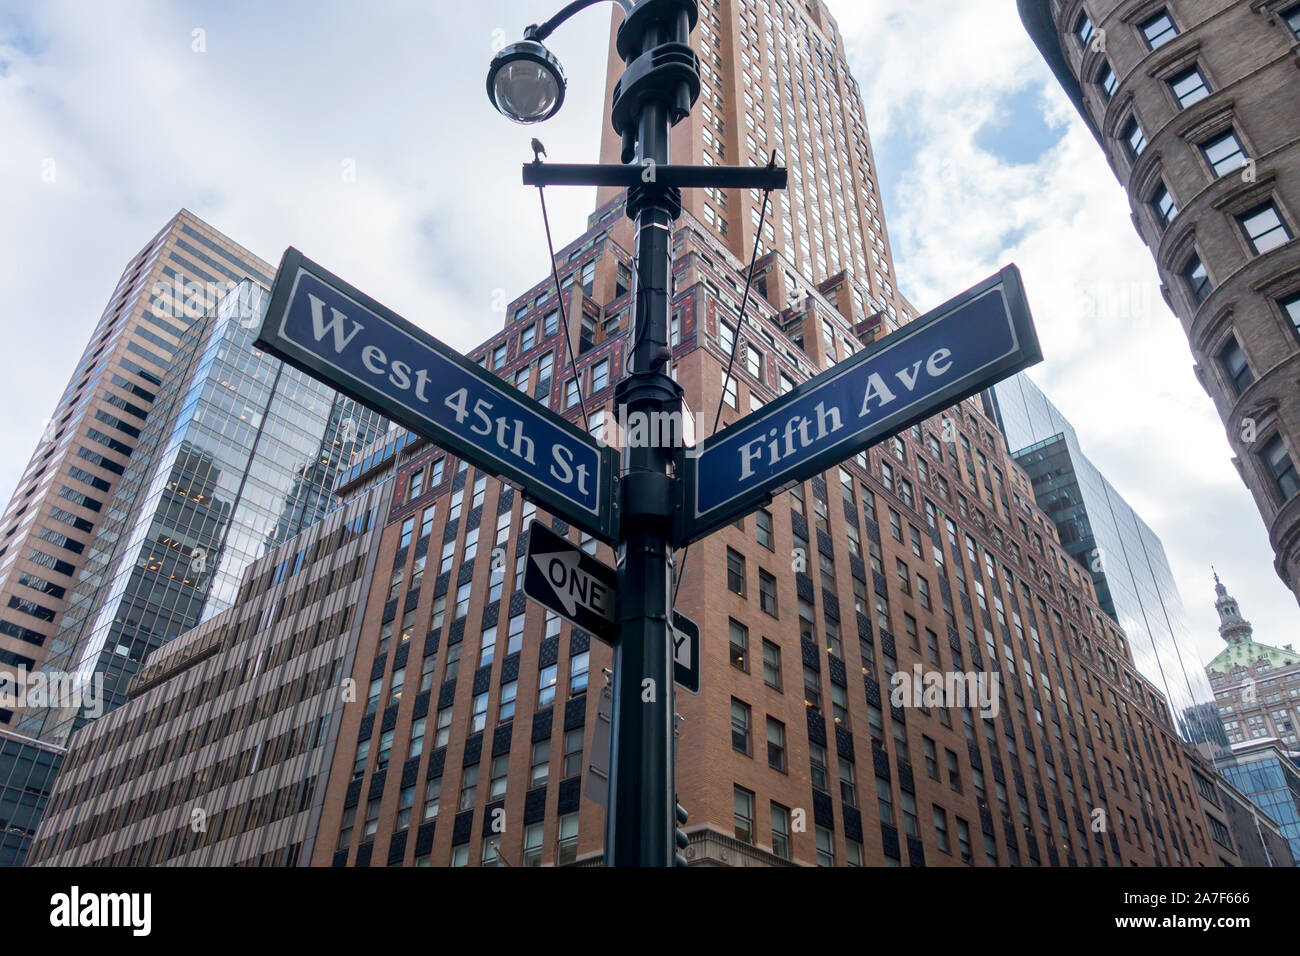 Fifth Avenue sign in New York, in un incrocio con una strada a Manhattan. Foto Stock